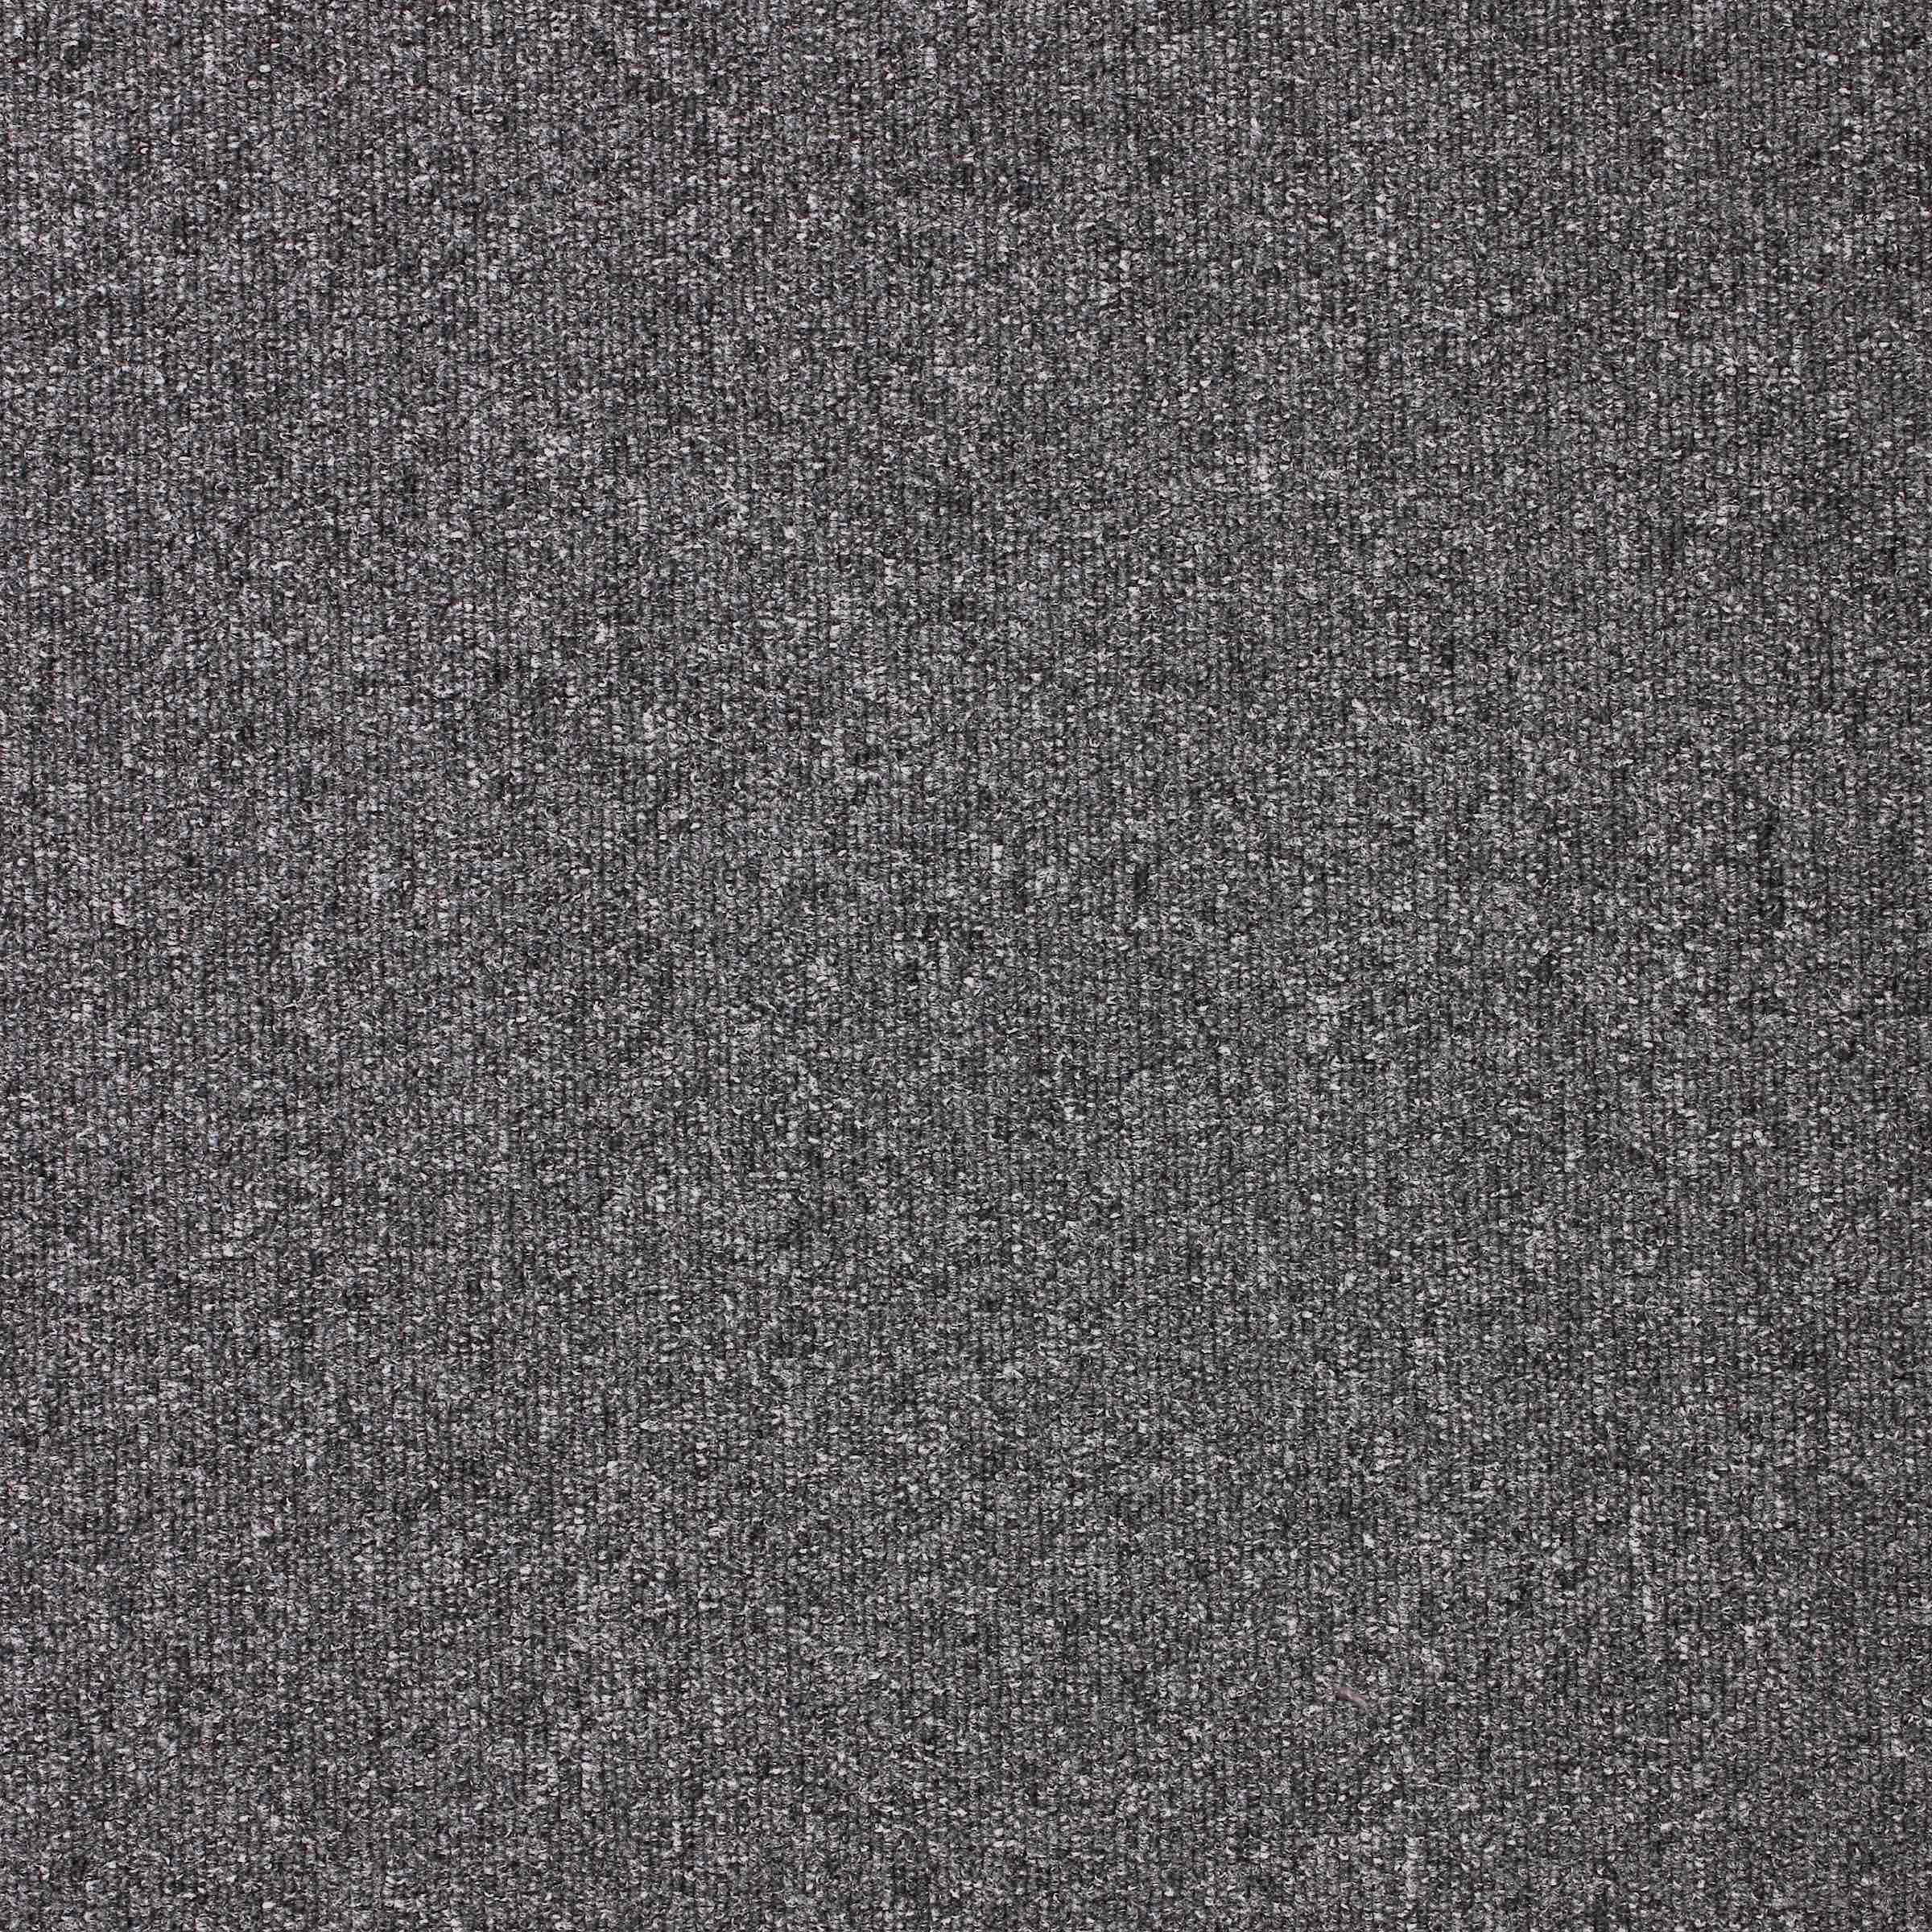 Diversity | Foundry Grey, 810 | Paragon Carpet Tiles | Commercial Carpet Tiles